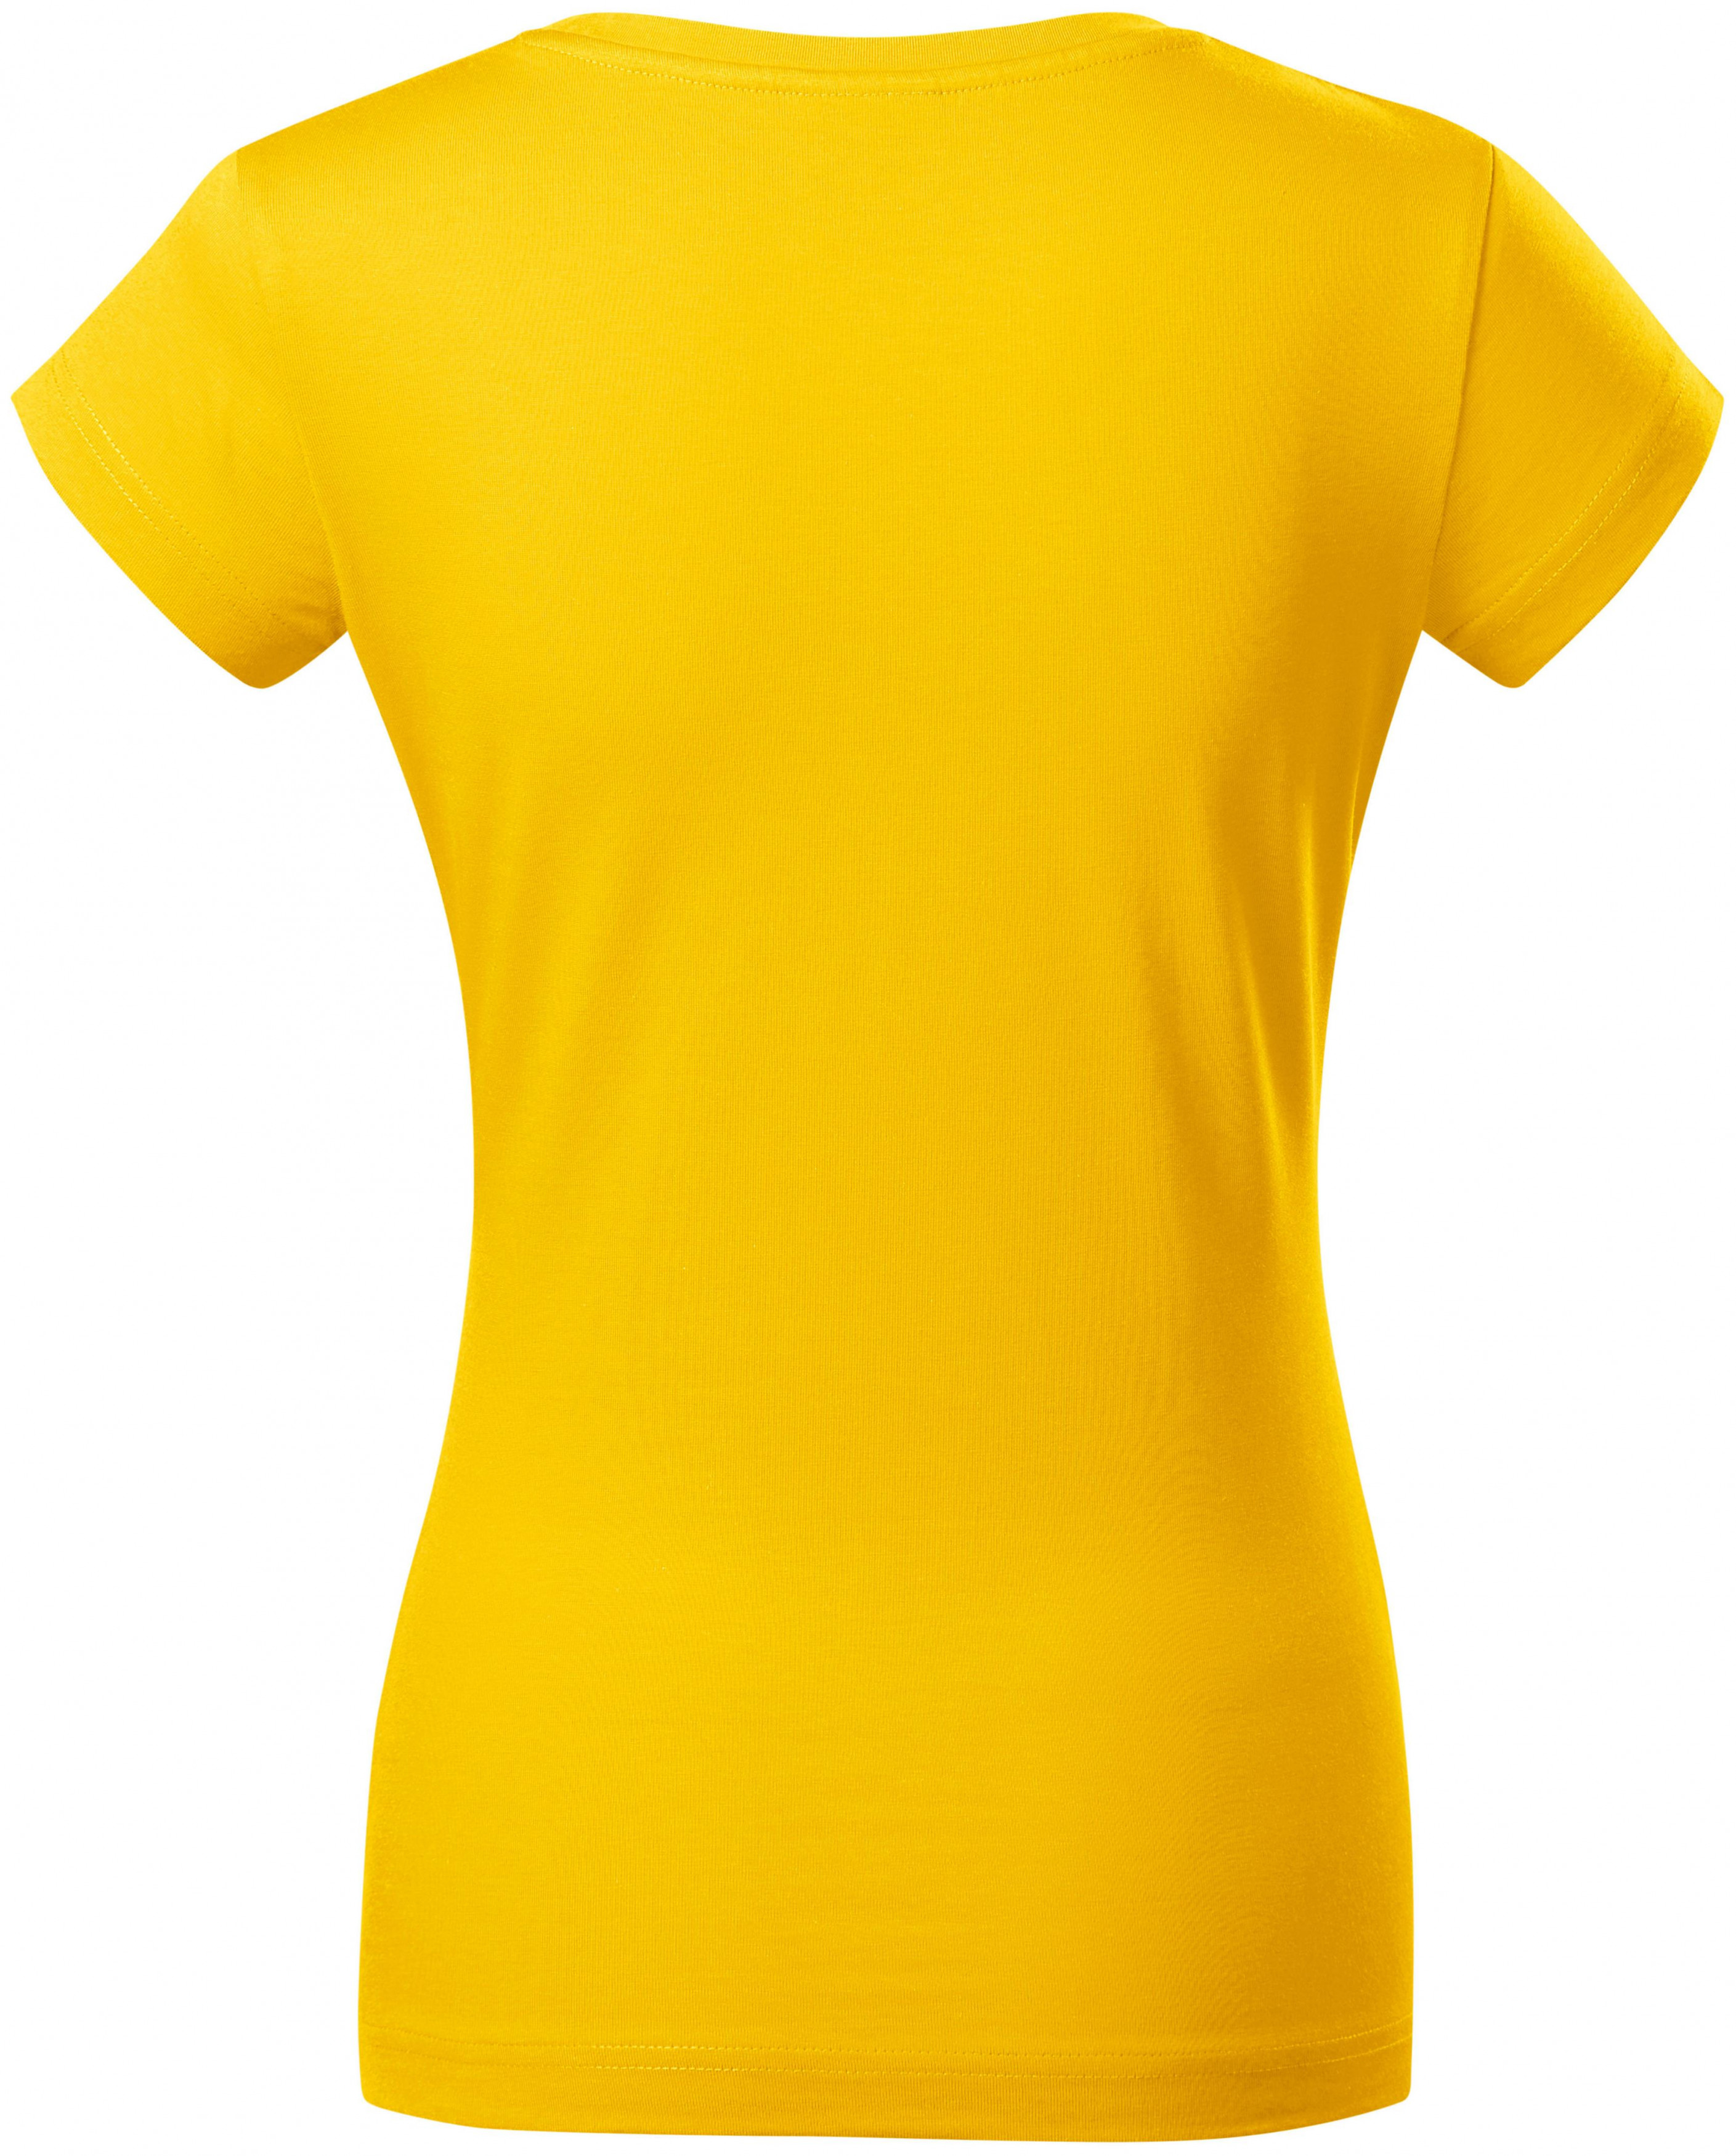 Dámske tričko zúžené s okrúhlym výstrihom, žltá, M